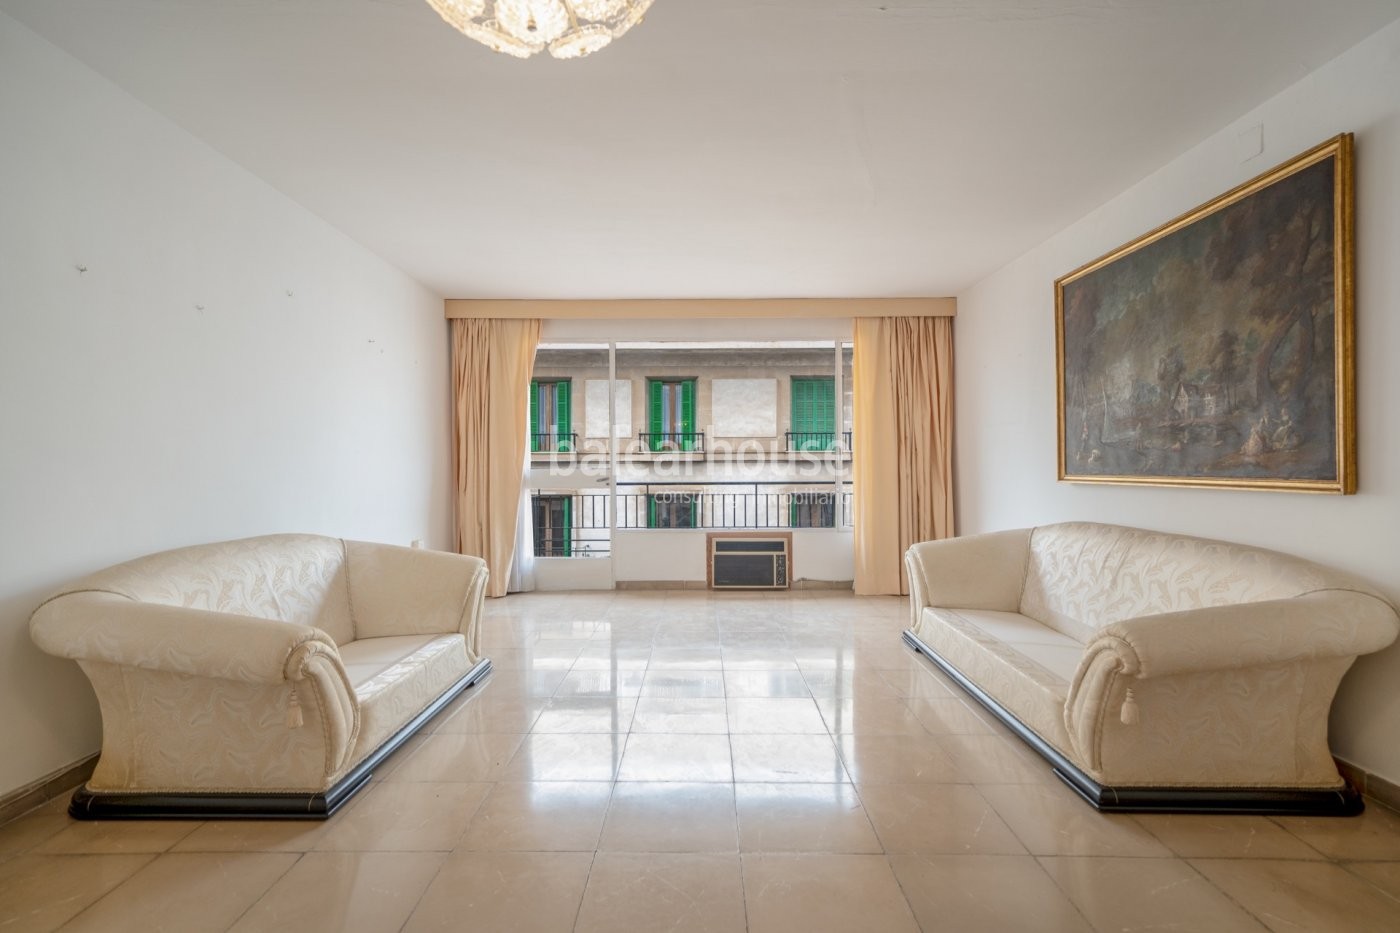 Excelente piso lleno de luz y con una privilegiada ubicación en la avenida Jaime III de Palma.